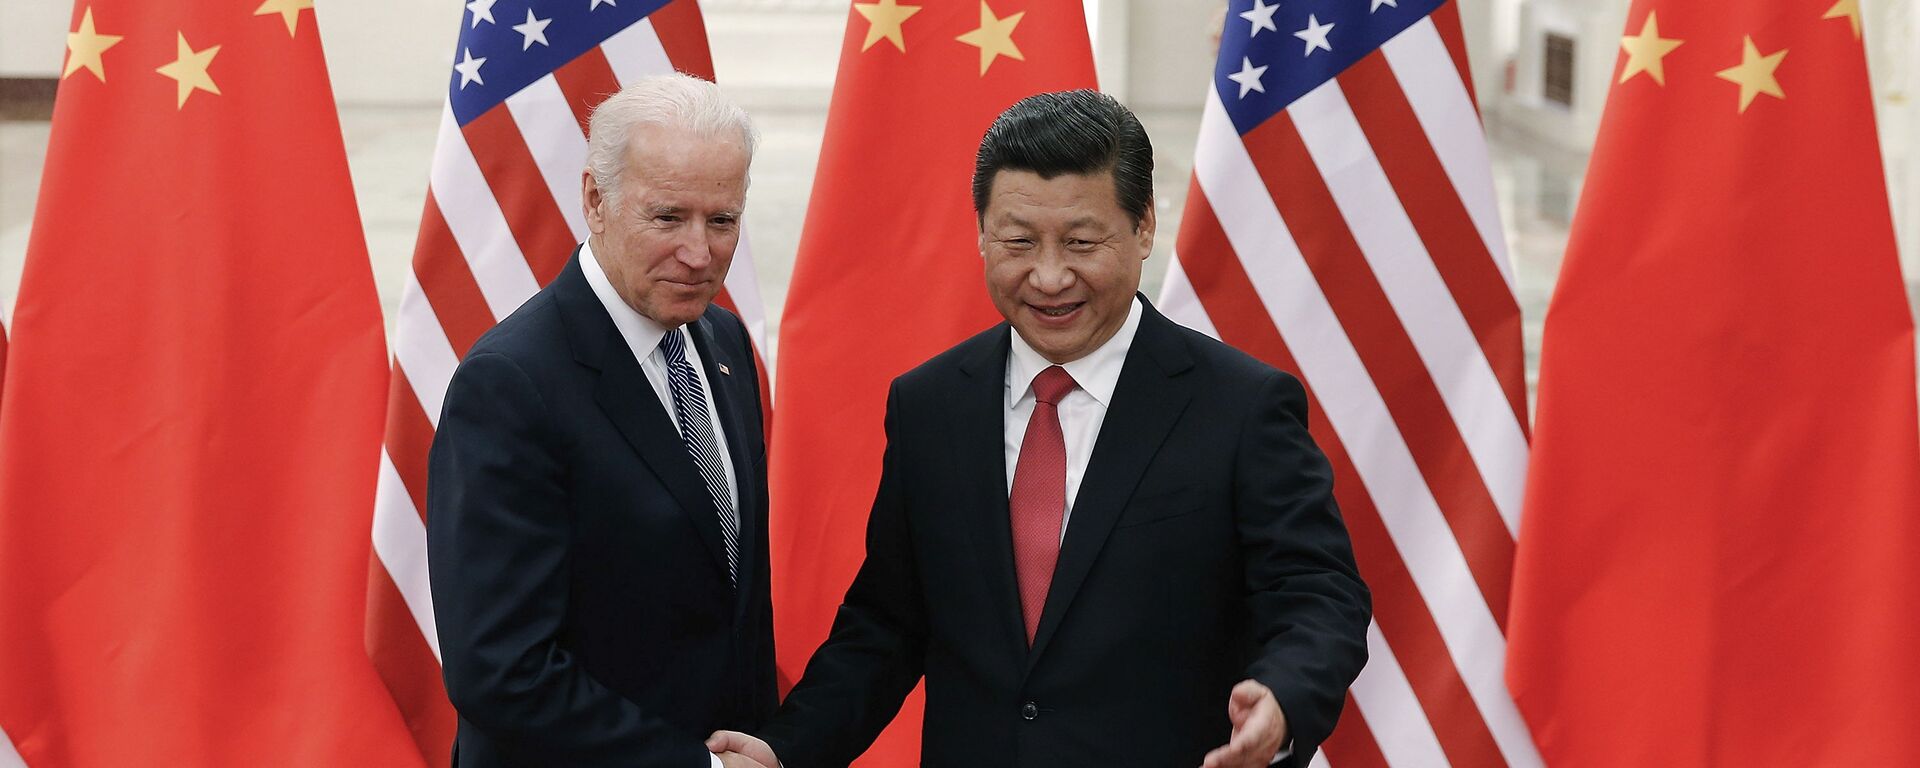 Xi Jinping, presidente da China (à direita), aperta a mão de Joe Biden, então vice-presidente dos EUA, no Grande Salão do Povo, em Pequim, na China, em 4 de dezembro de 2013 - Sputnik Brasil, 1920, 11.11.2021